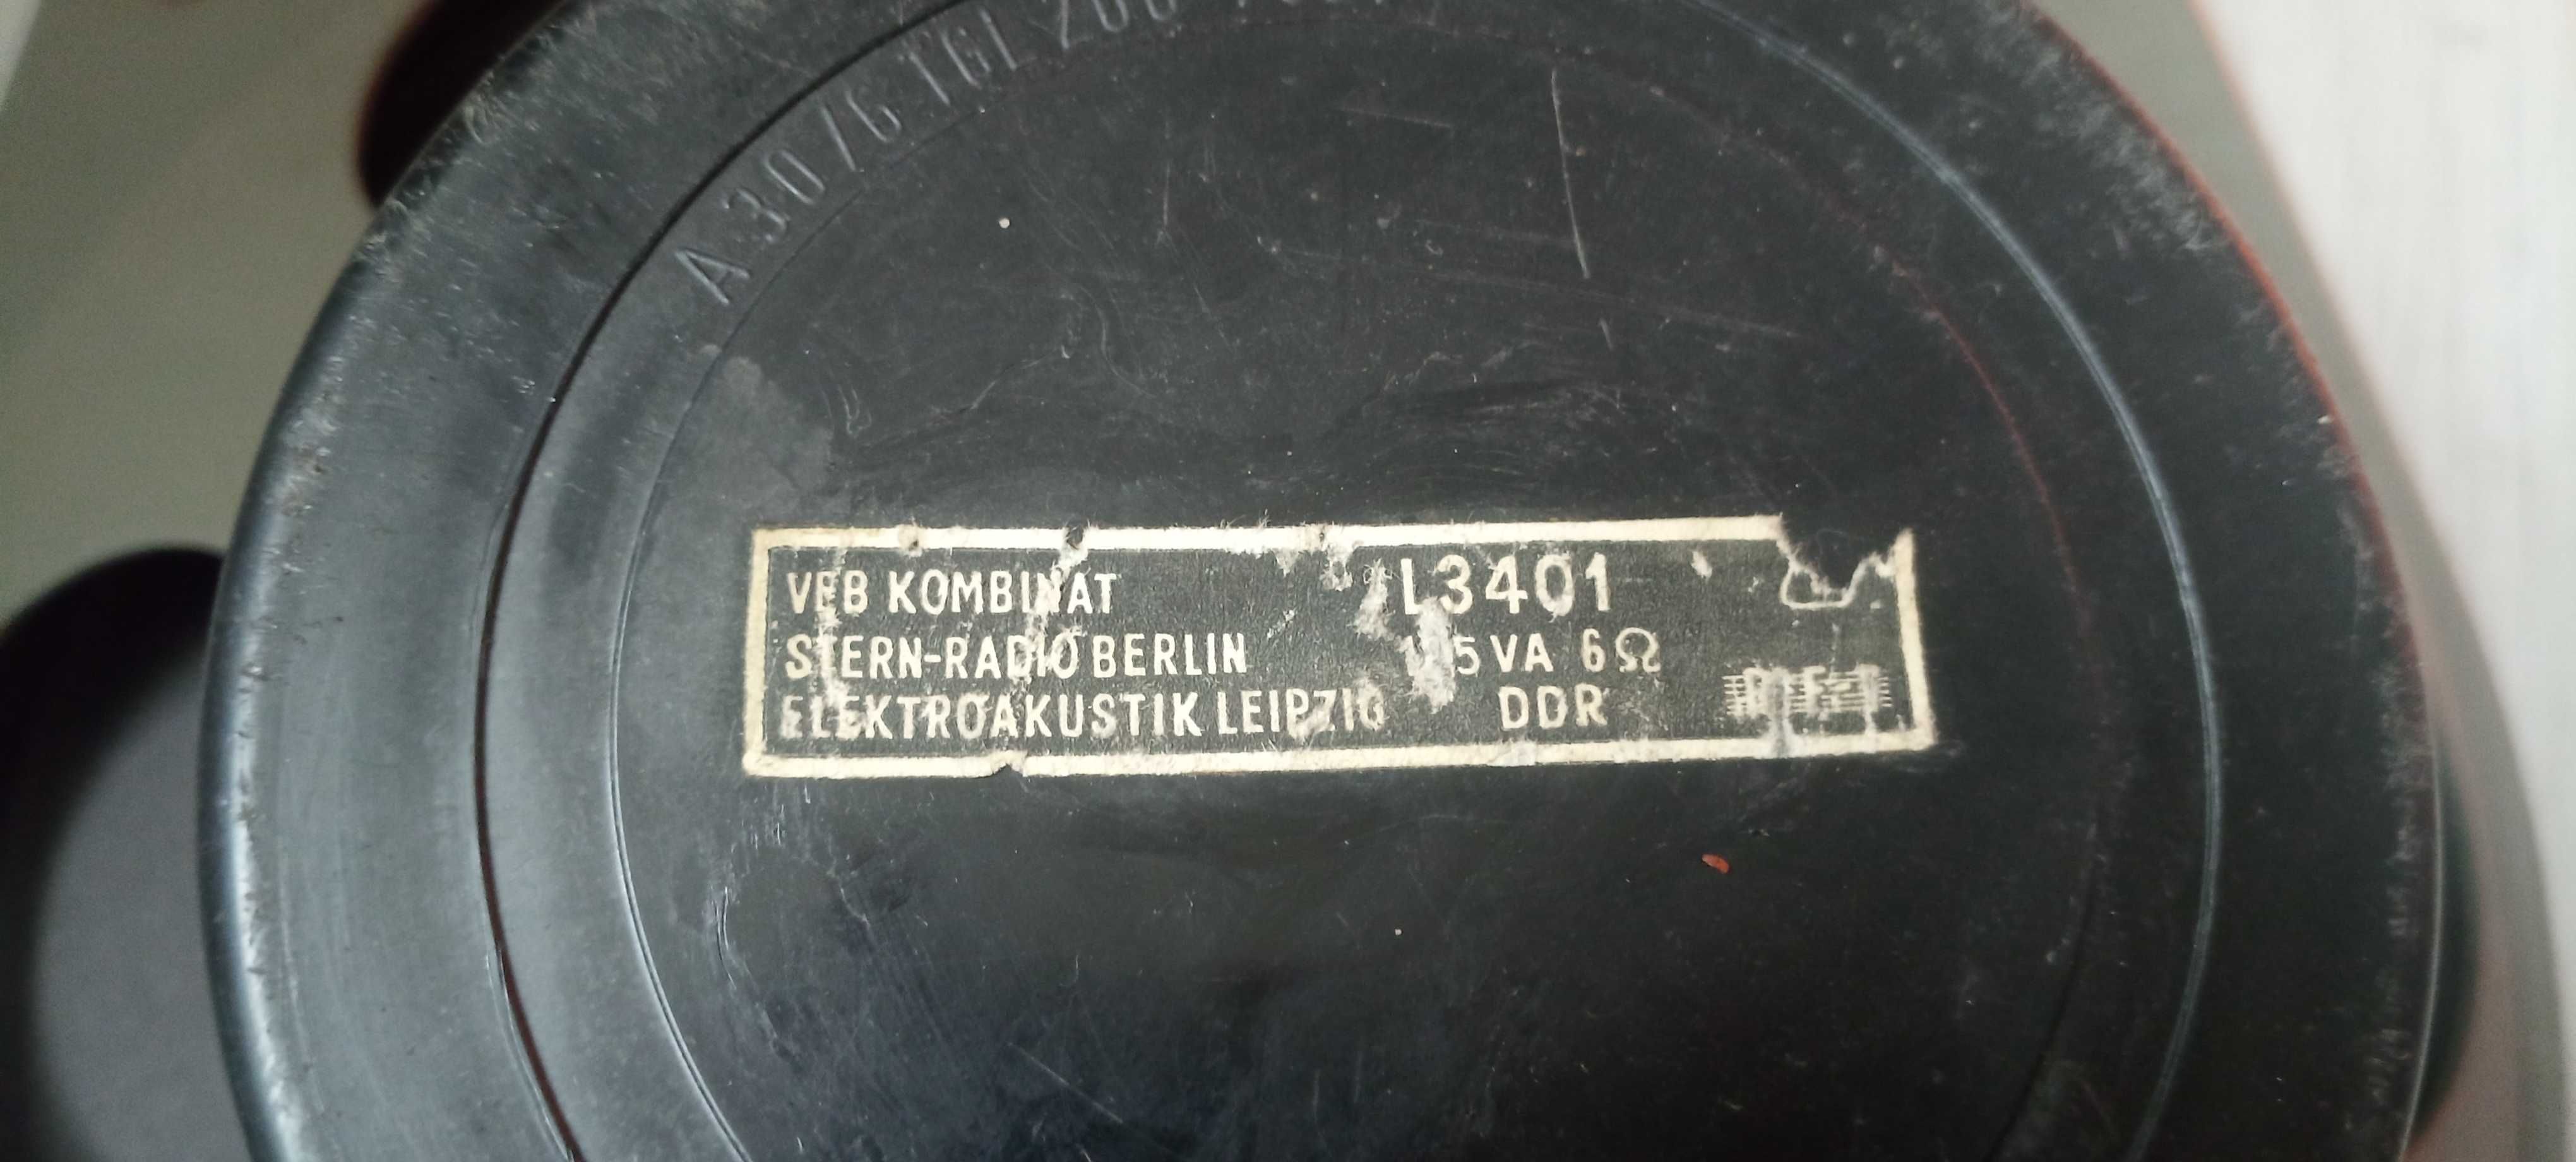 głośnik vintage RFT L3401  średnica 30 cm